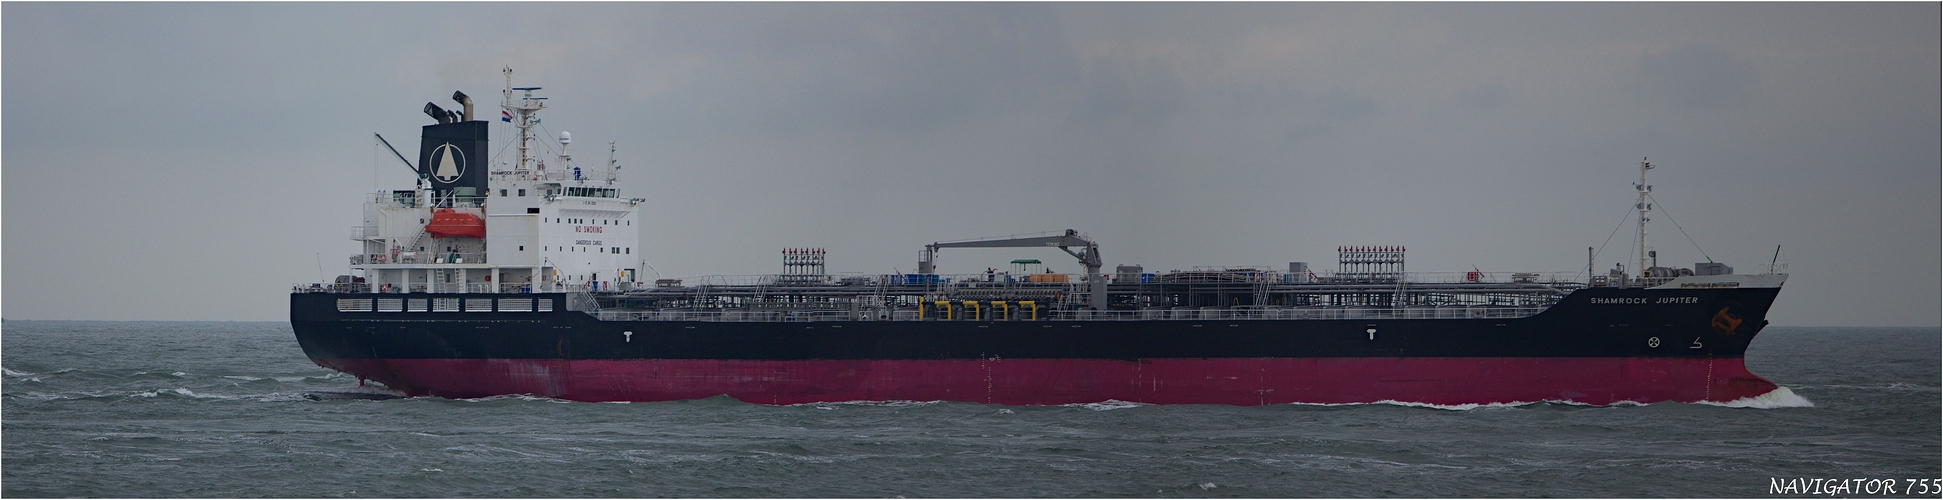 SHAMROCK JUPITER / Oil/Chemical Tanker / Rotterdam / Bitte scrollen!